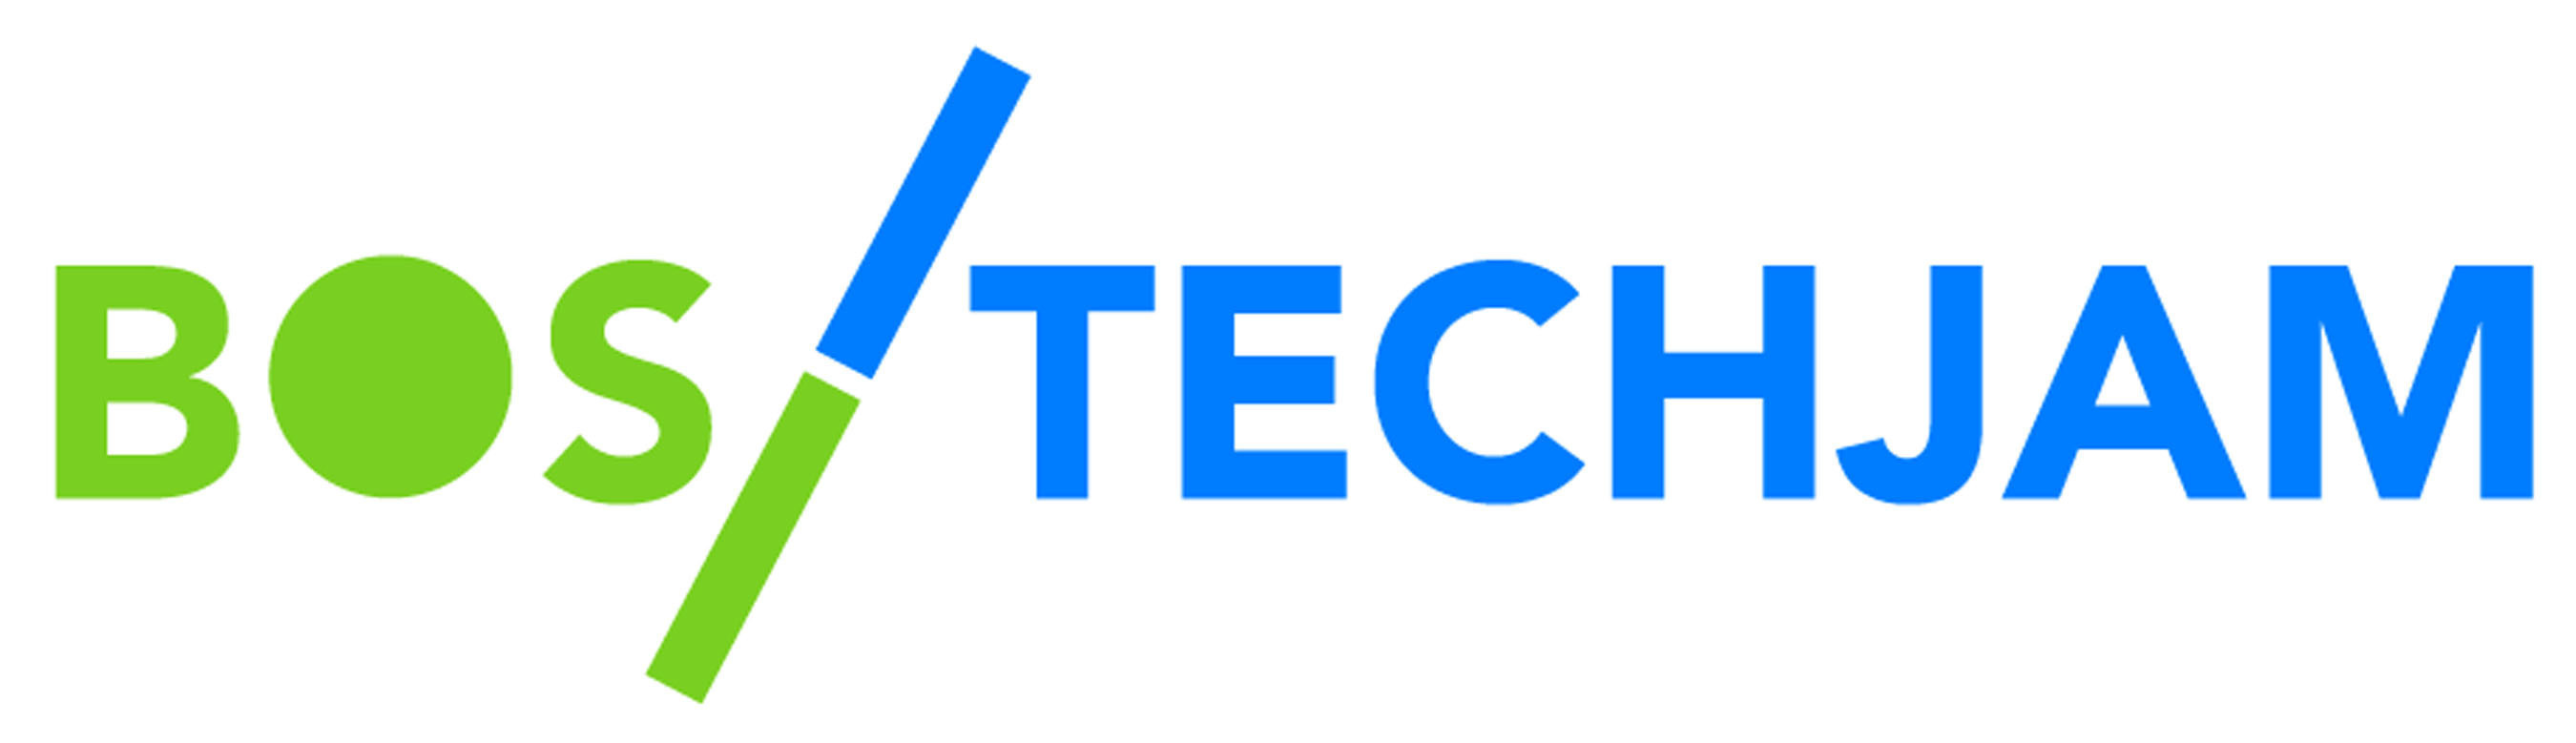 Boston TechJam logo (PRNewsFoto/Boston TechJam)